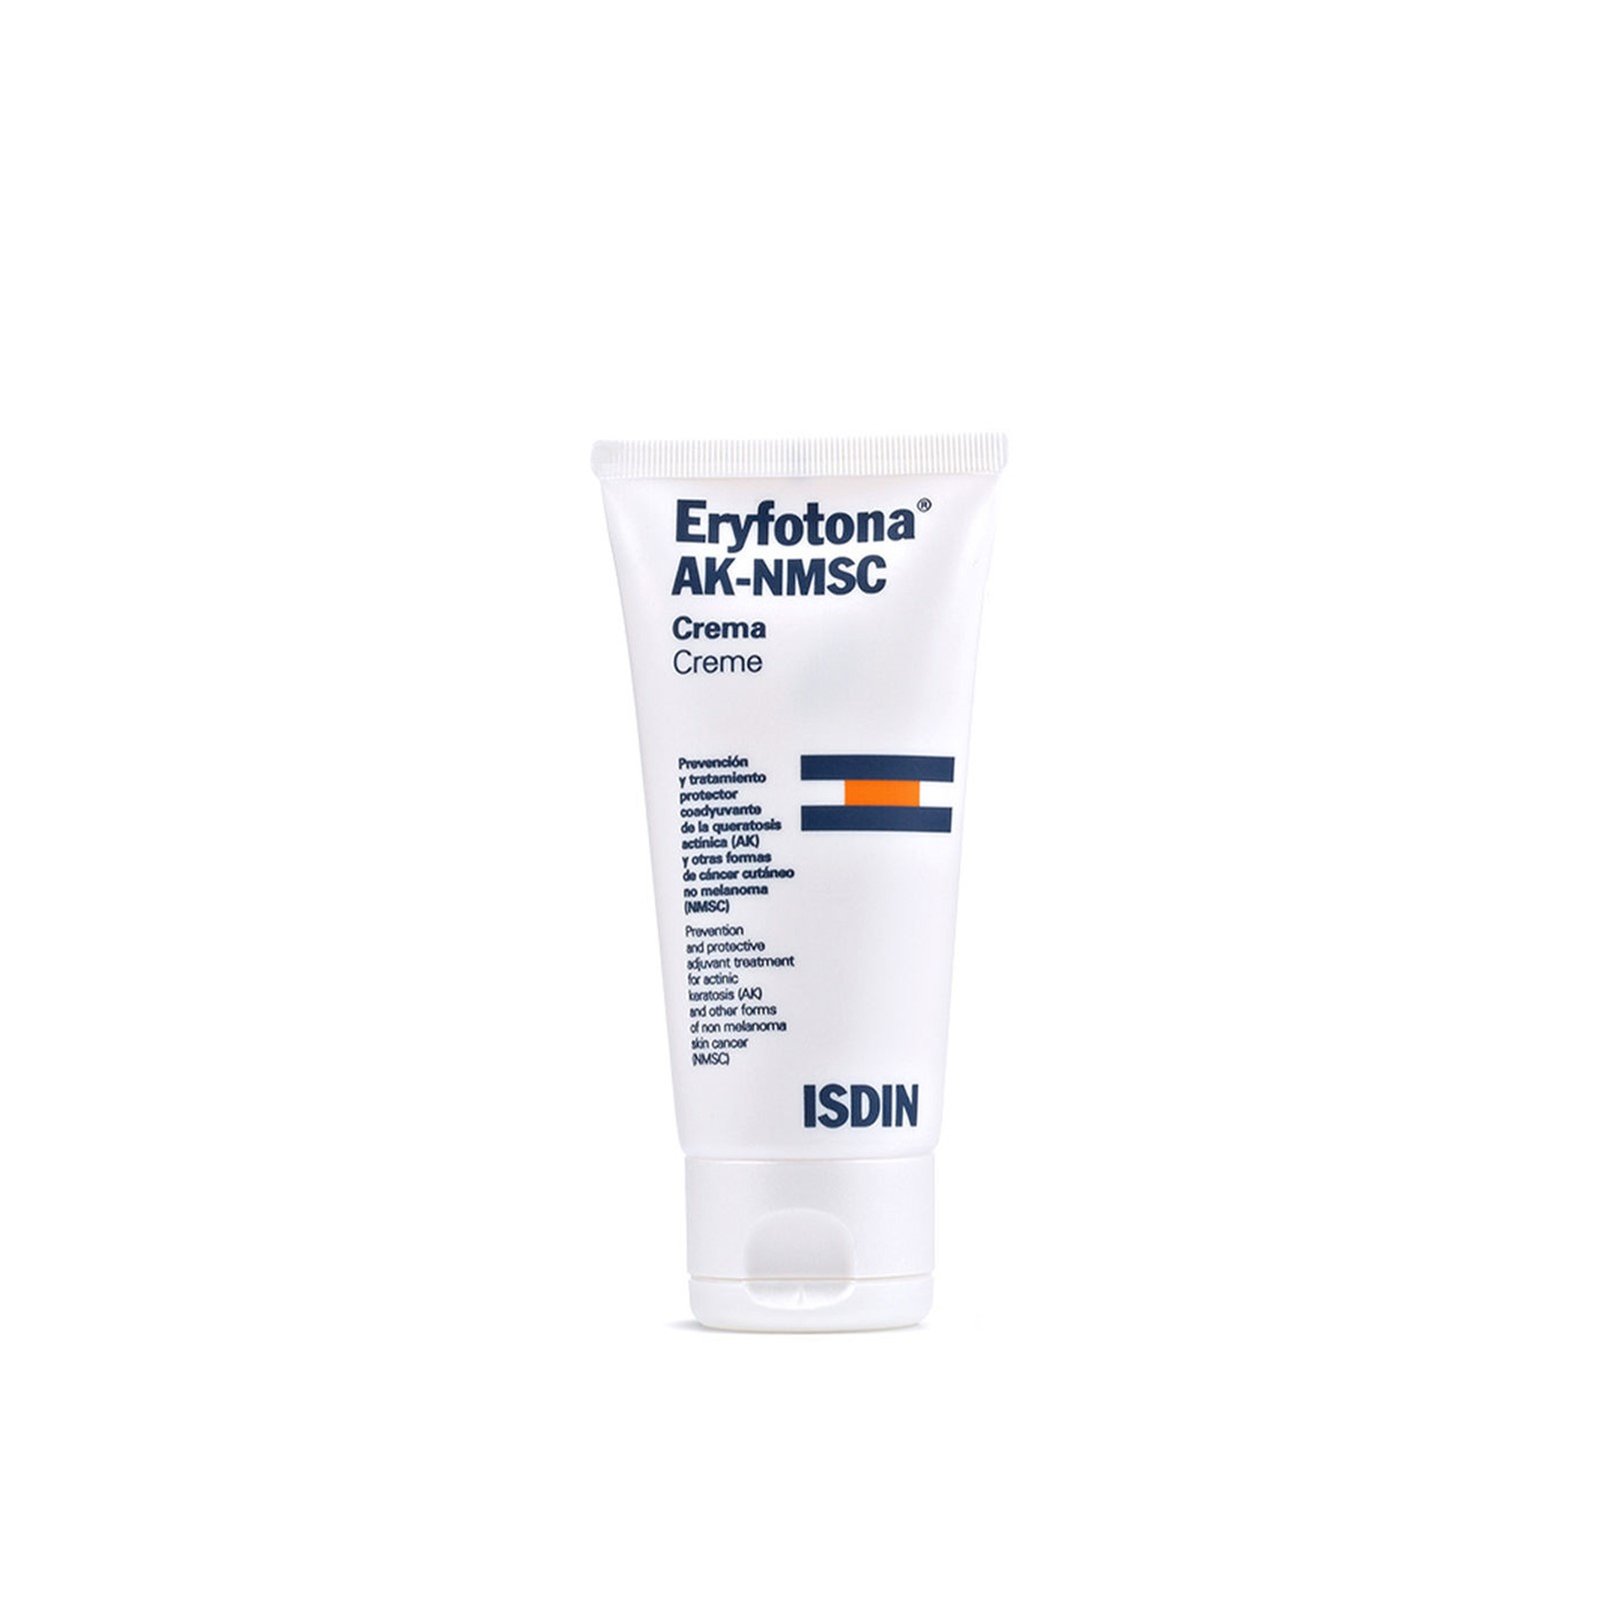 ISDIN Eryfotona AK-NMSC Cream 50ml (1.69floz)